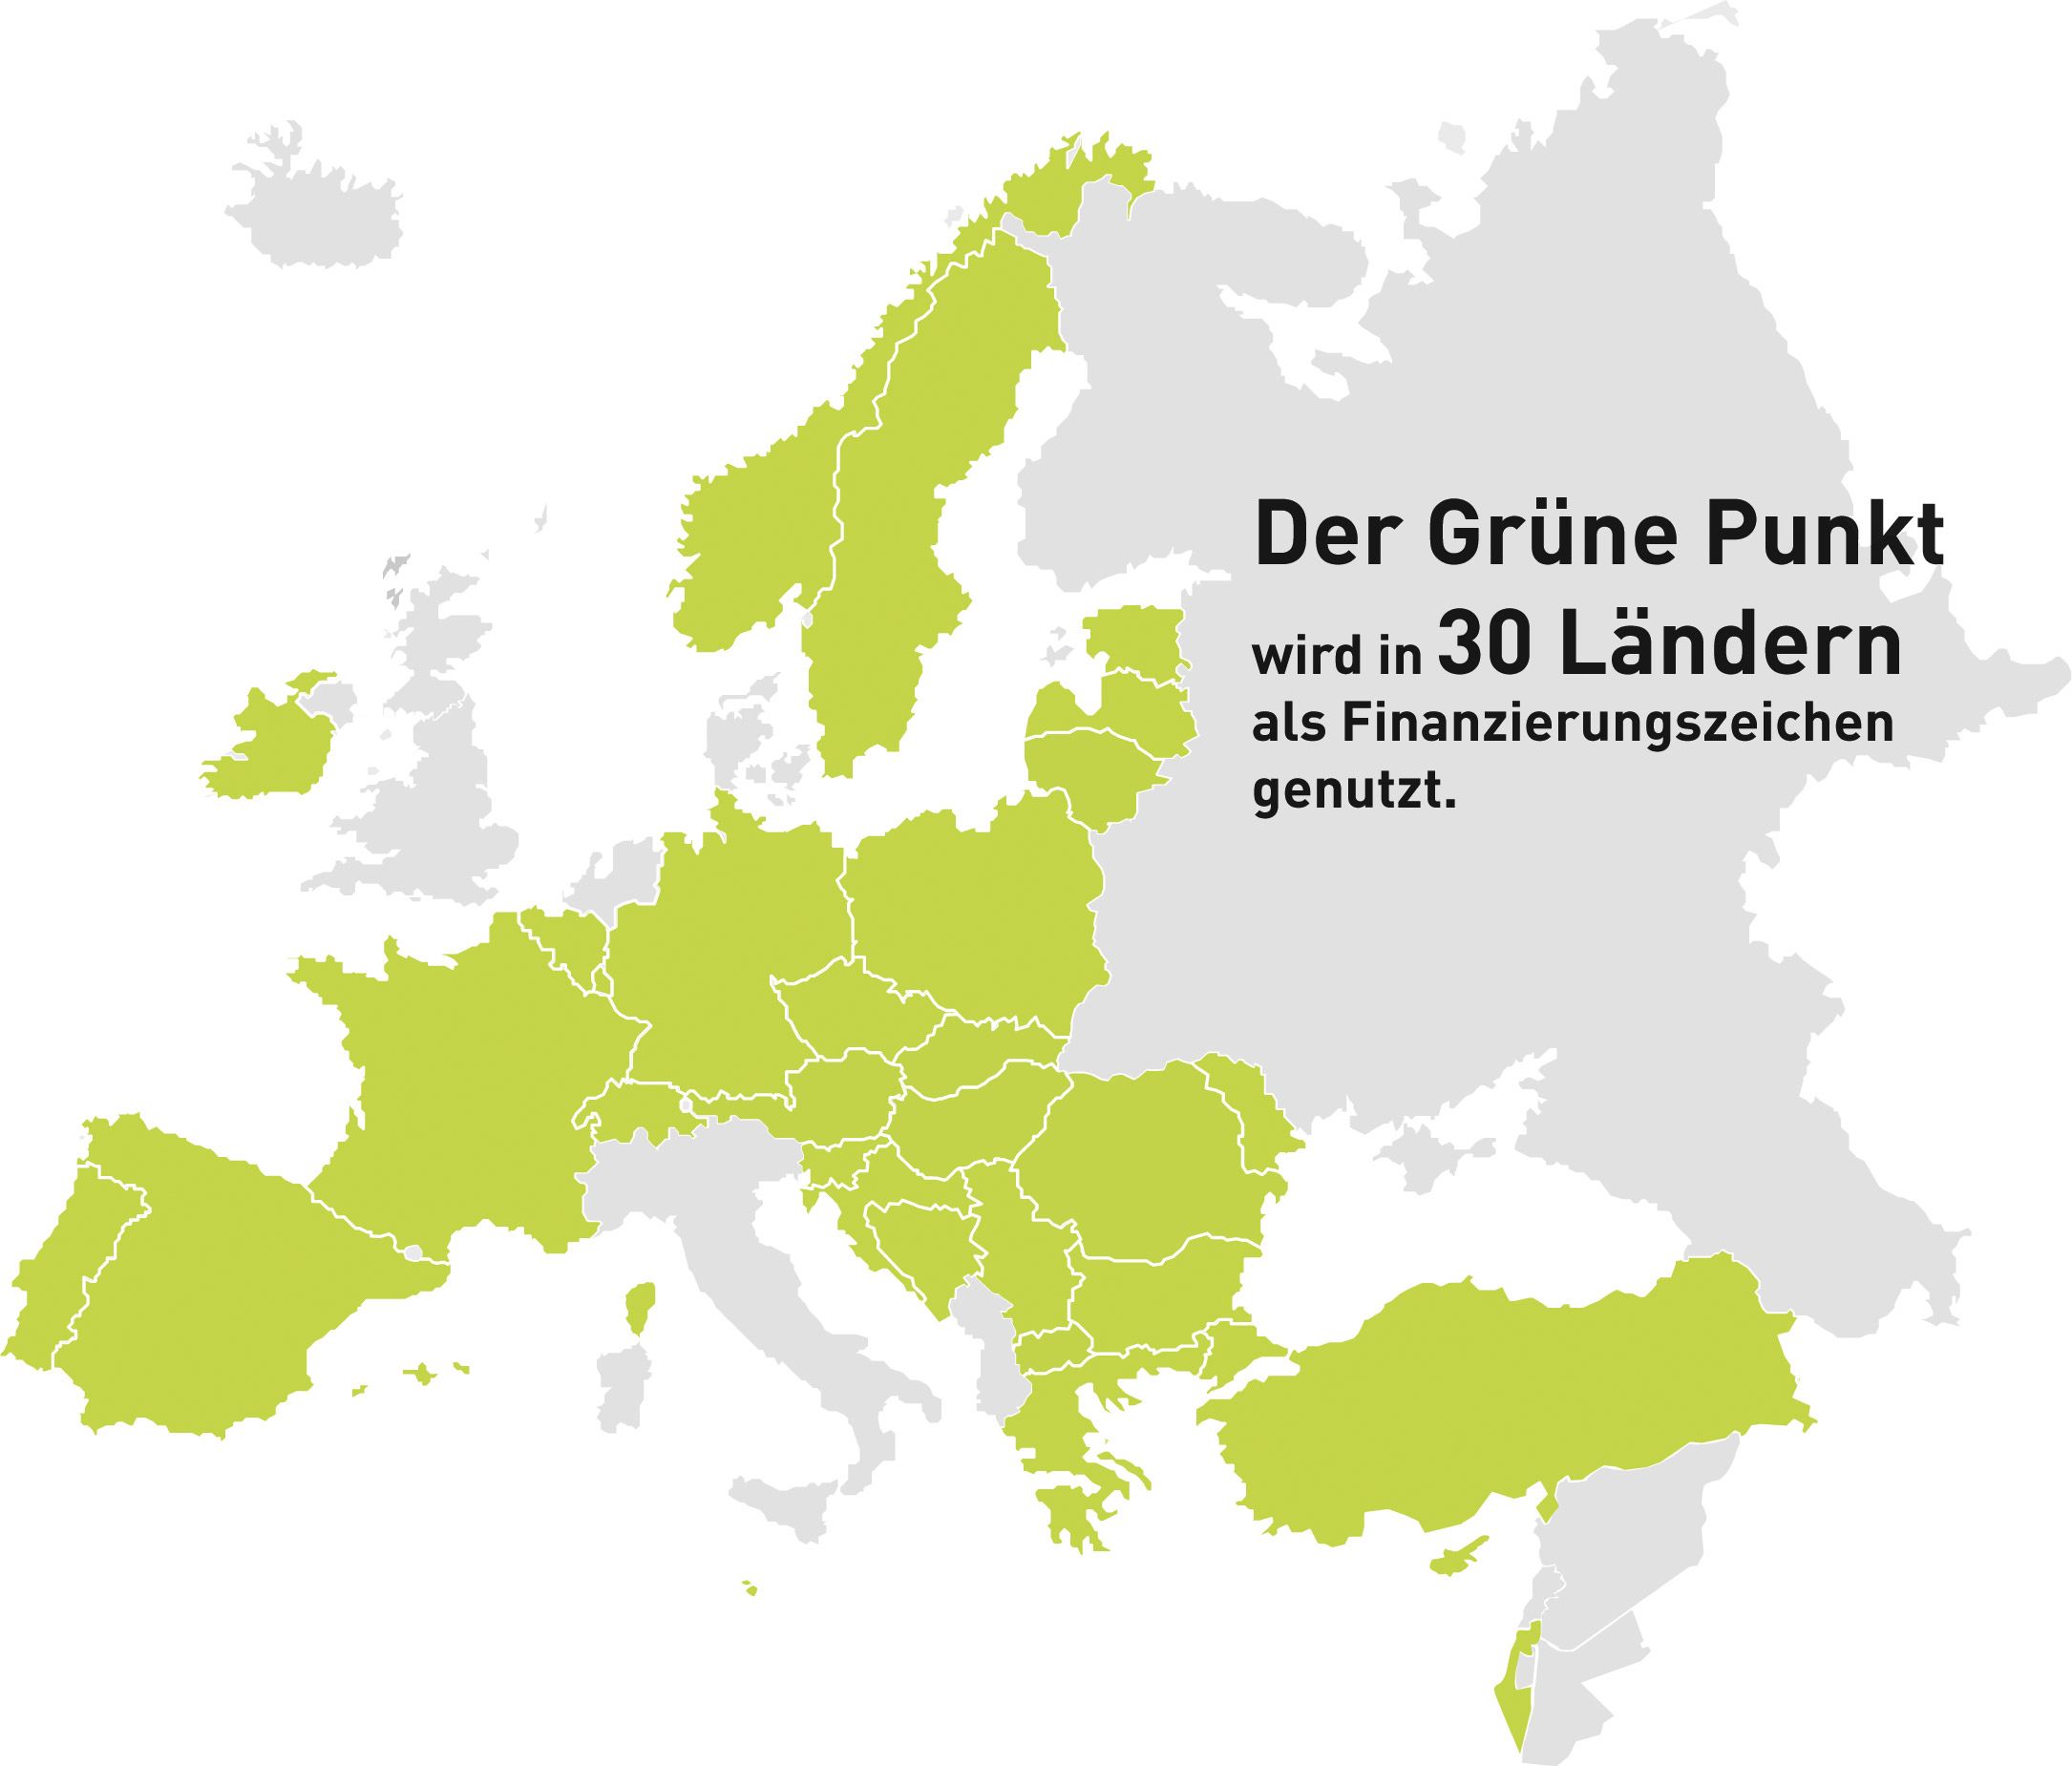 Der Grüne Punkt in Europa - PRO Europe: Der Grüne Punkt als Gründungsmitglied der Dachorganisation der Grüner-Punkt-Systeme